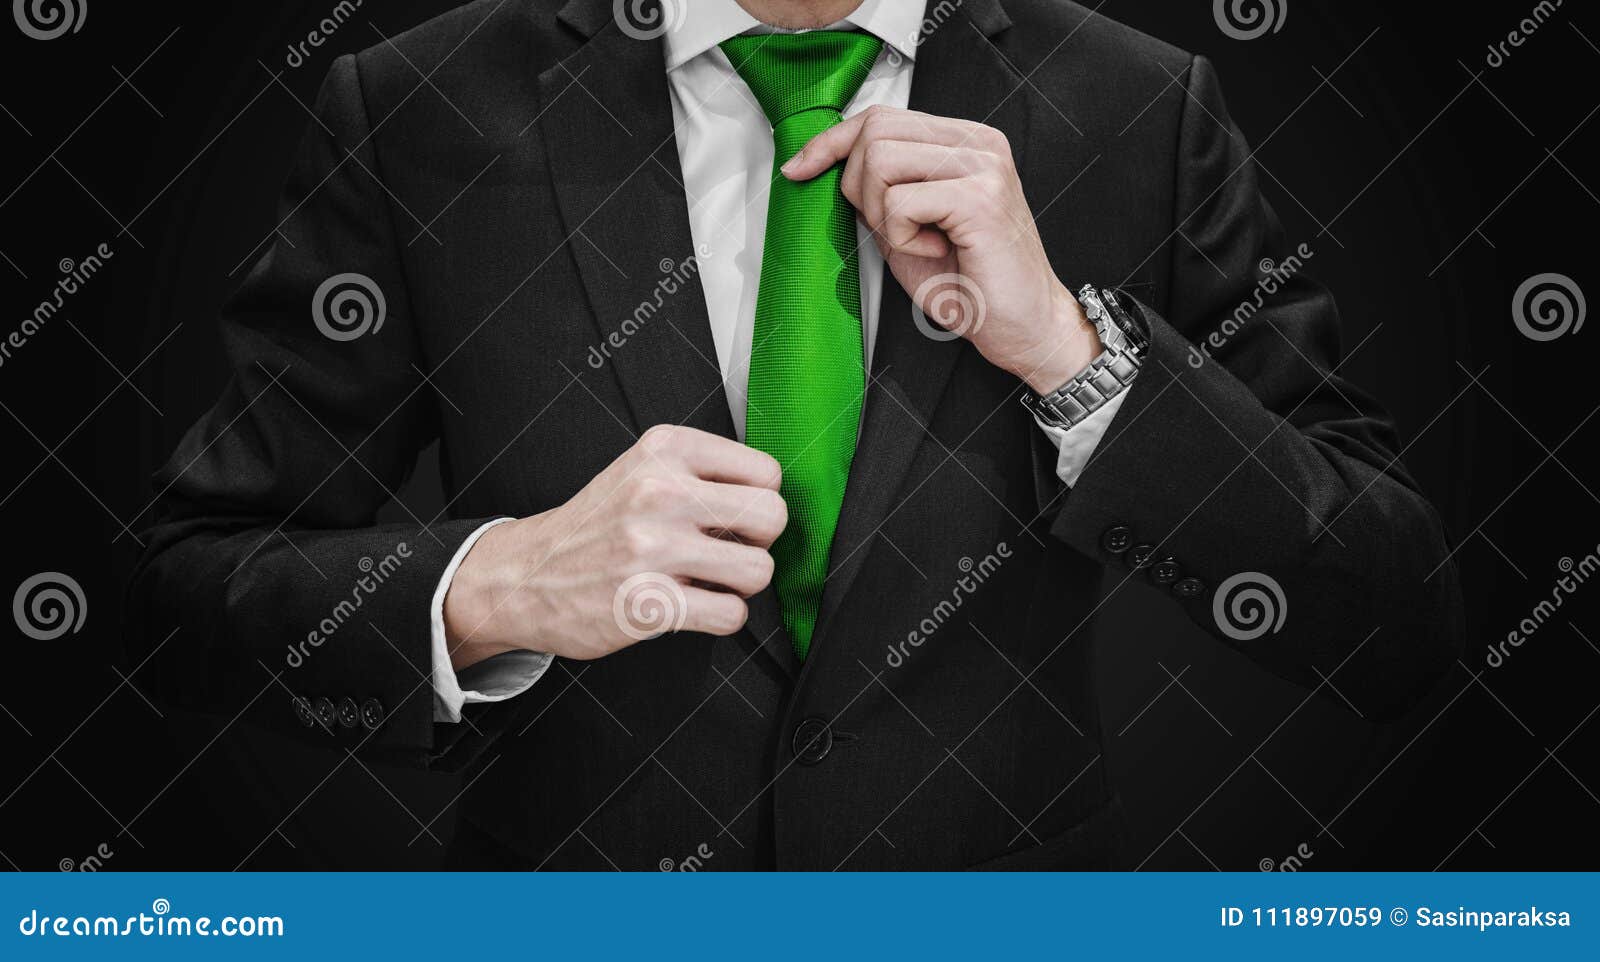 Hombre De Negocios En El Traje Negro Que Ata La Corbata Verde, En Fondo Negro La Ilustración Imagen de archivo - Imagen de fondos, ambiente: 111897059